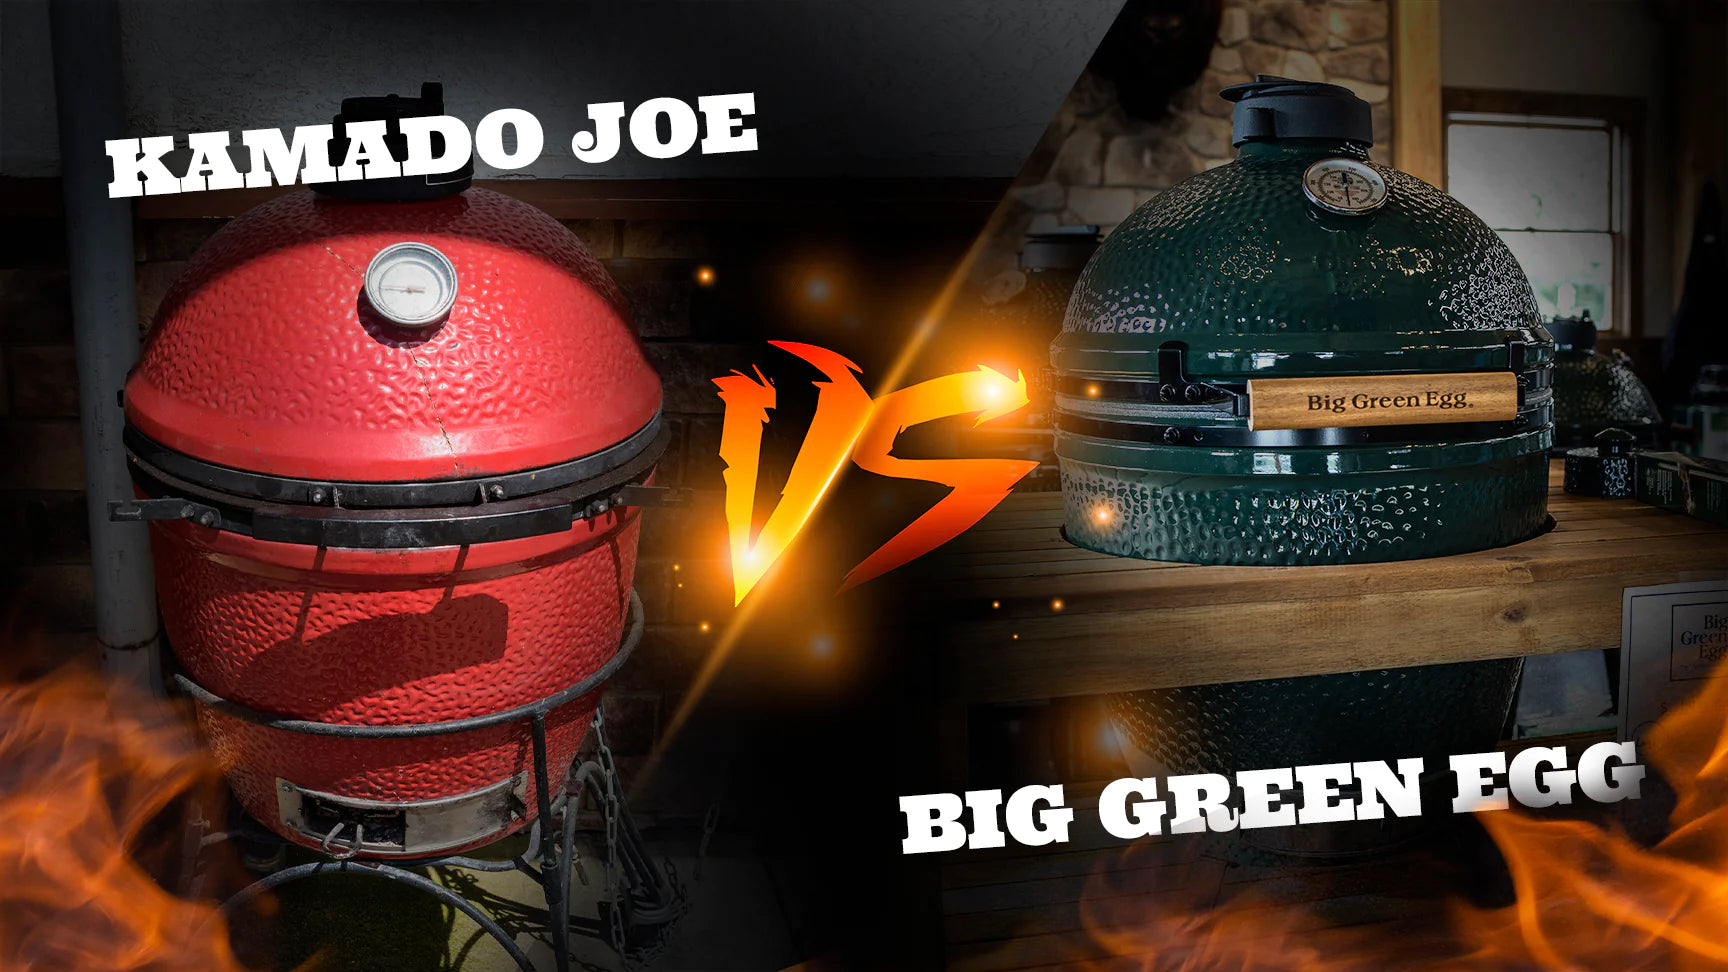 Battle of the Titans: Kamado Joe vs Big Green Egg